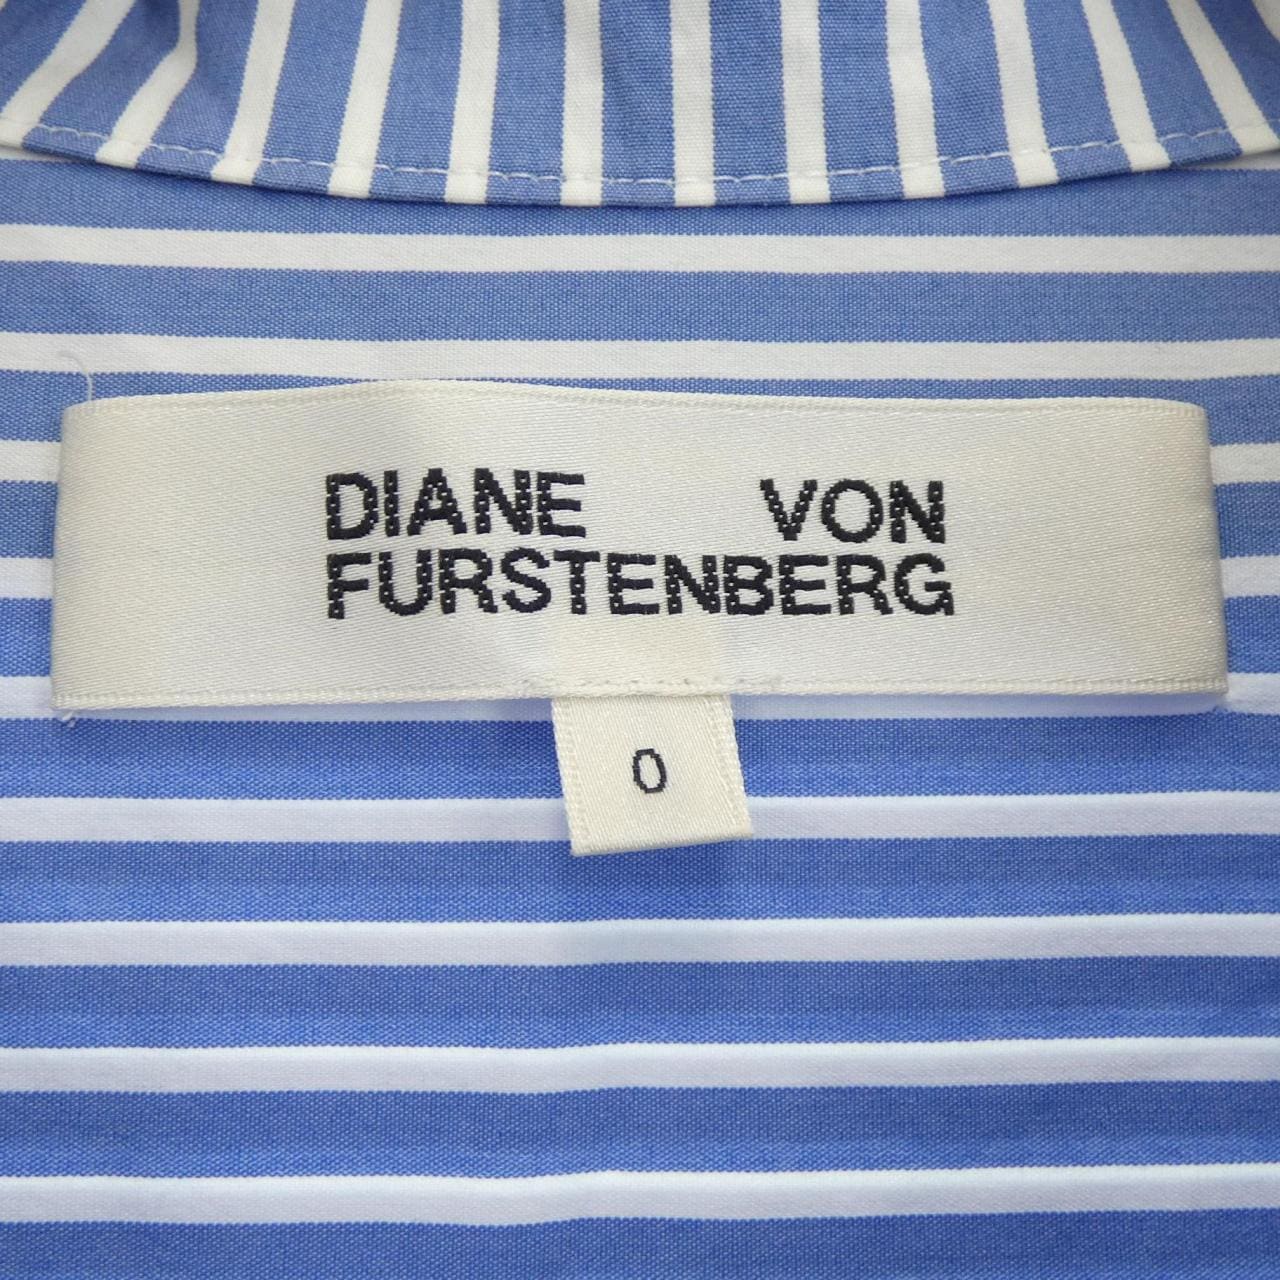 Diane von Furstenberg DIANE vonFURSTENBERG衬衫